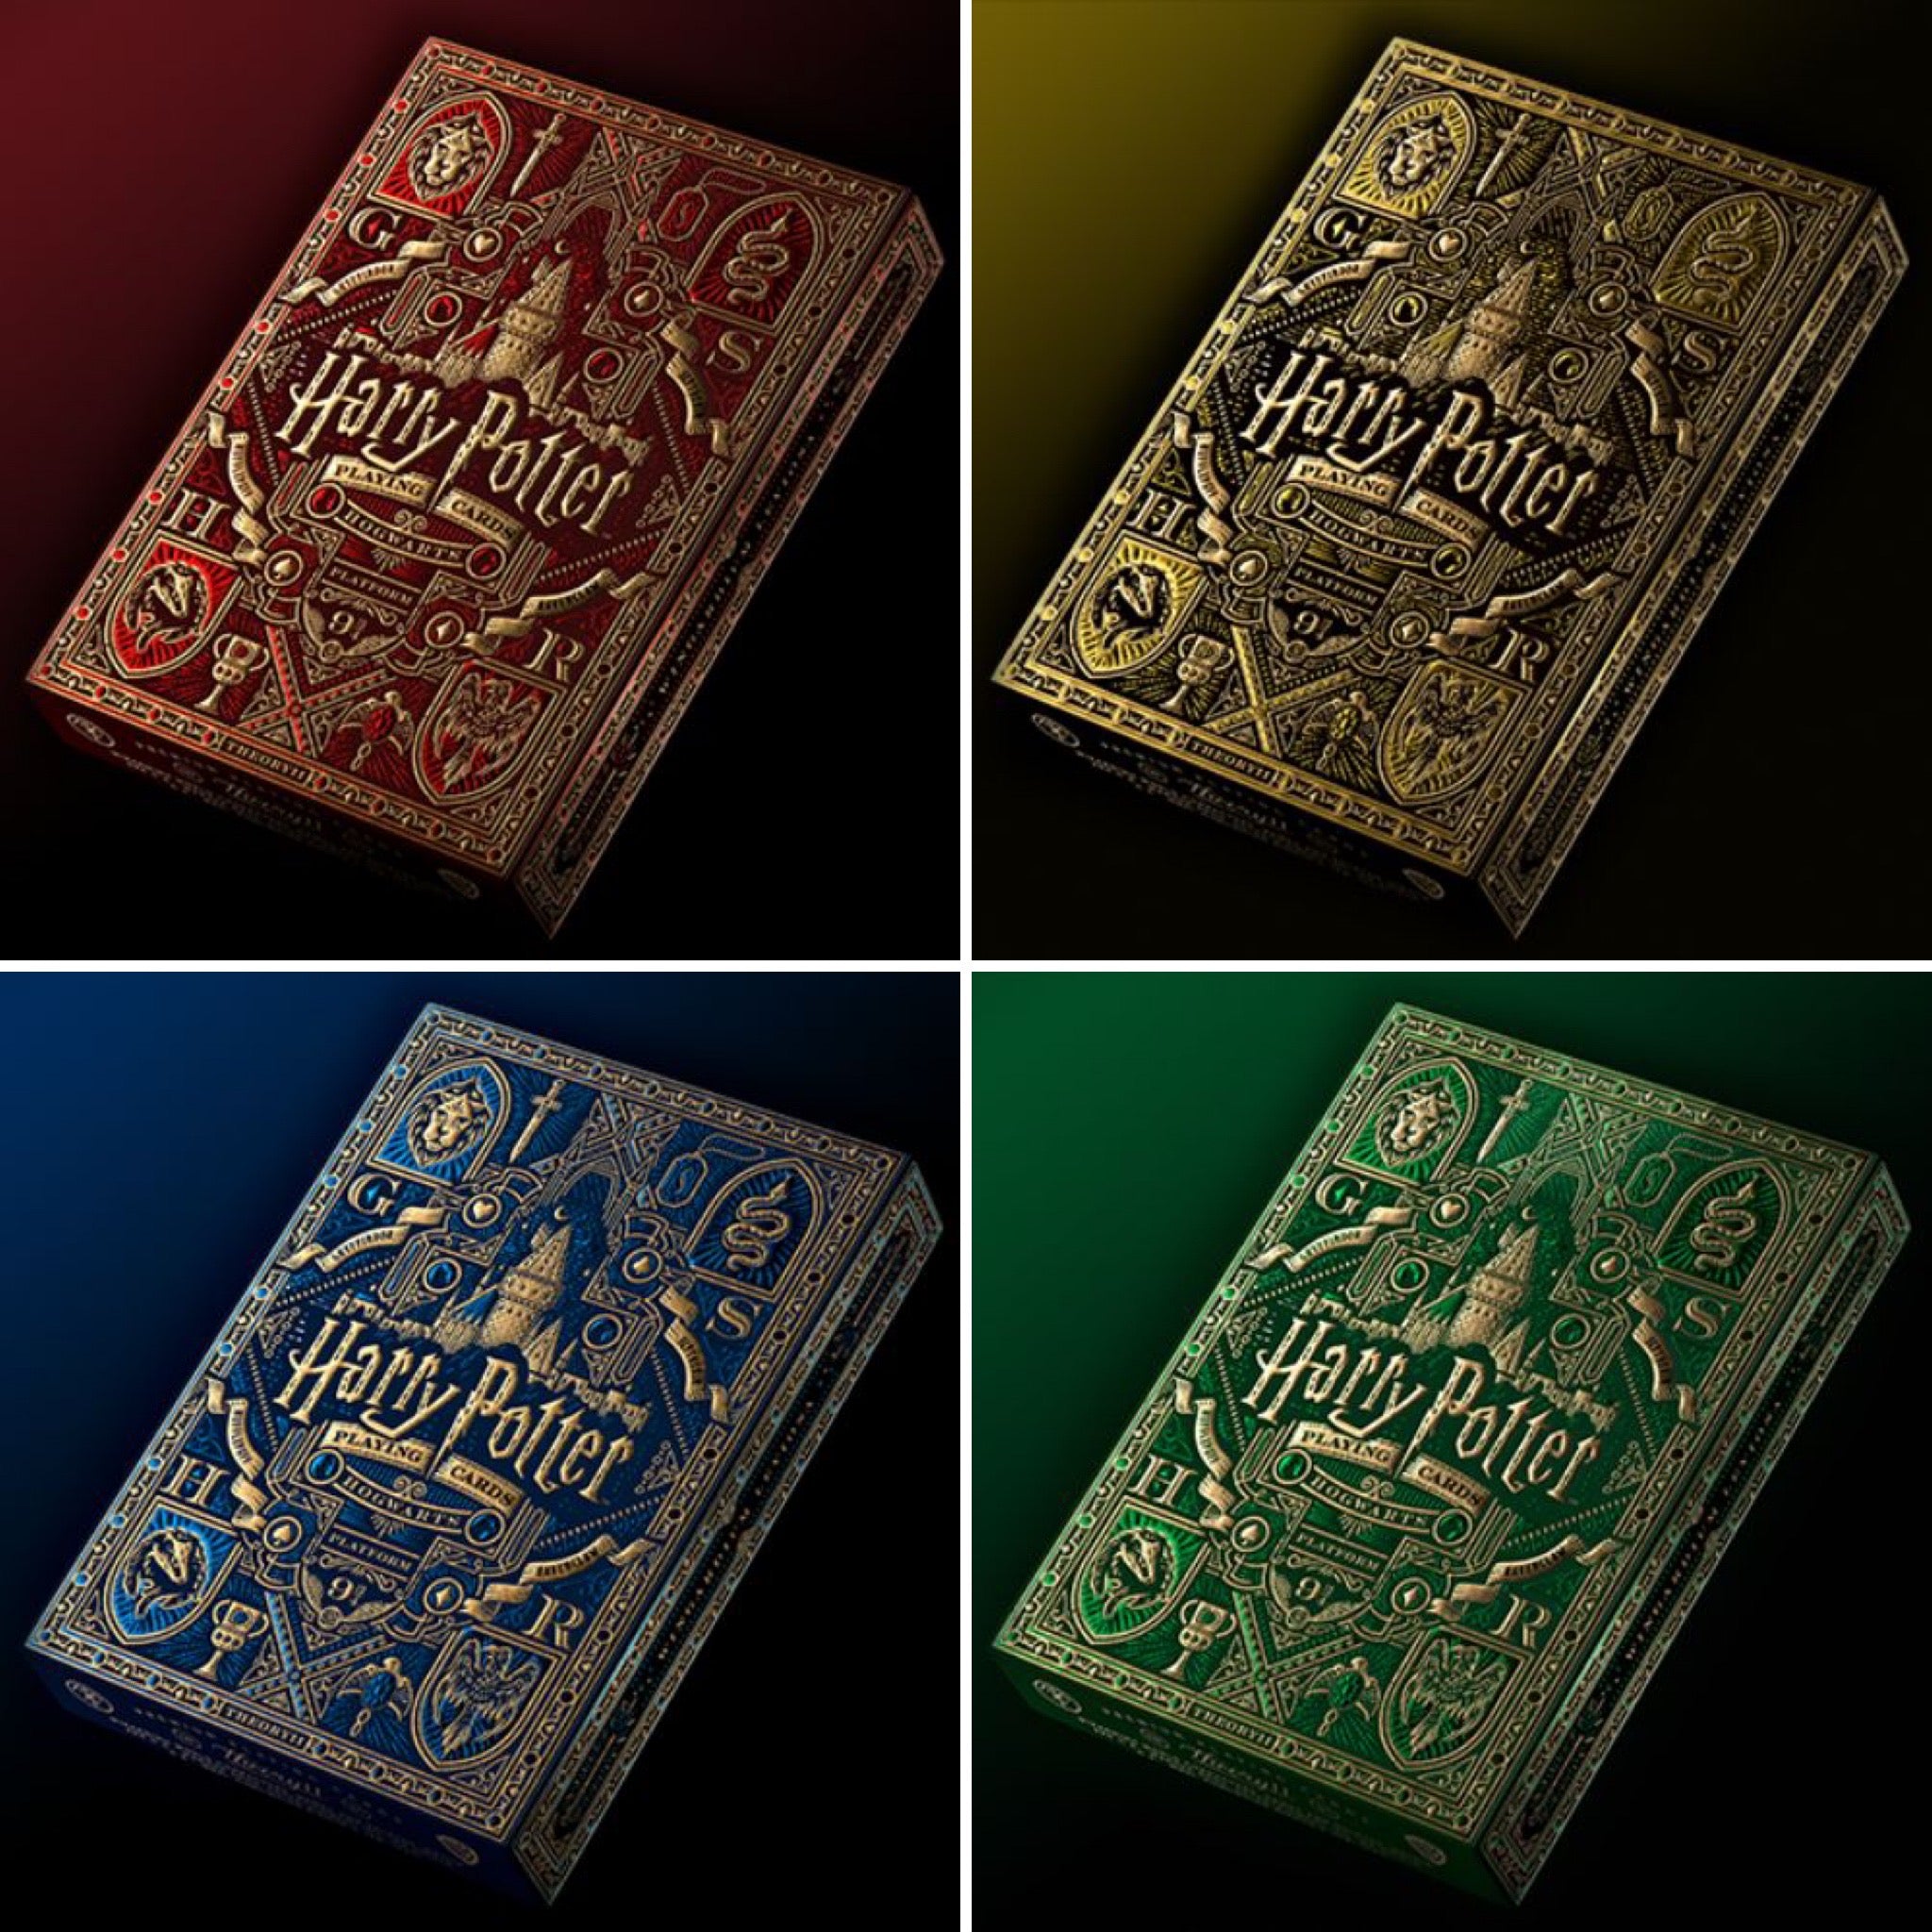 Harry Potter - Jeu de cartes à jouer Hogwarts - Jeux de cartes - LDLC